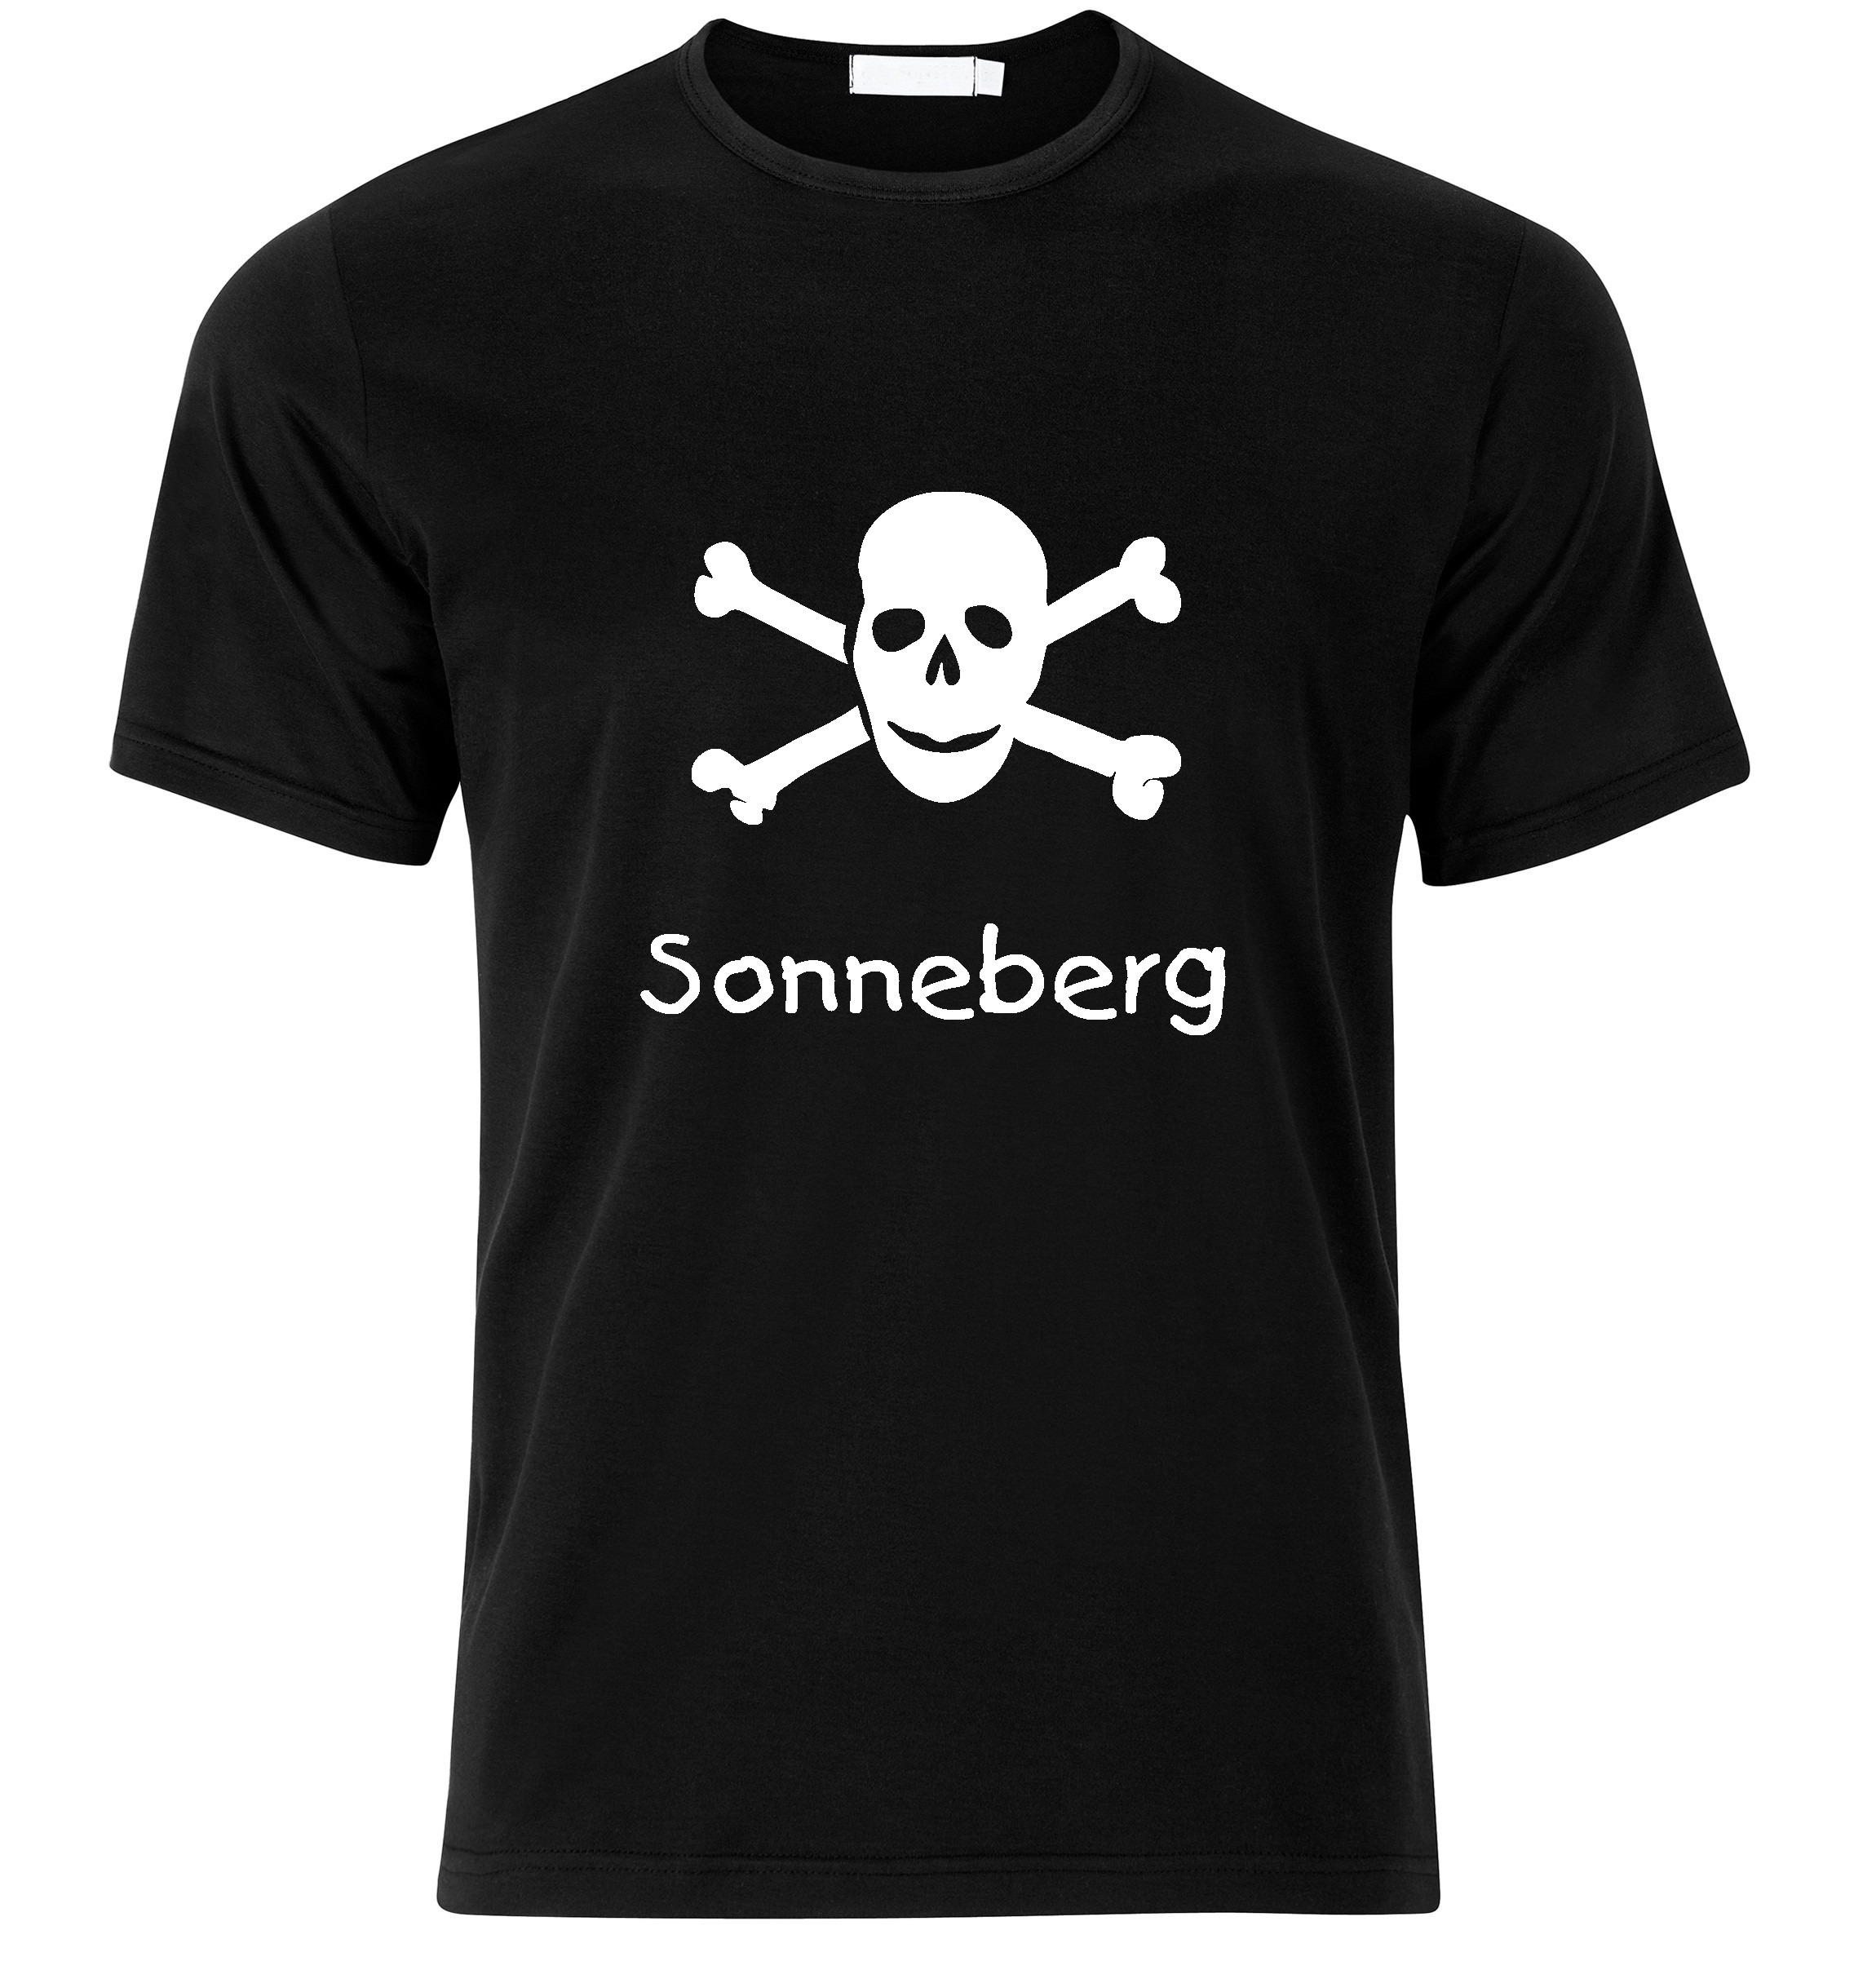 T-Shirt Sonneberg Jolly Roger, Totenkopf